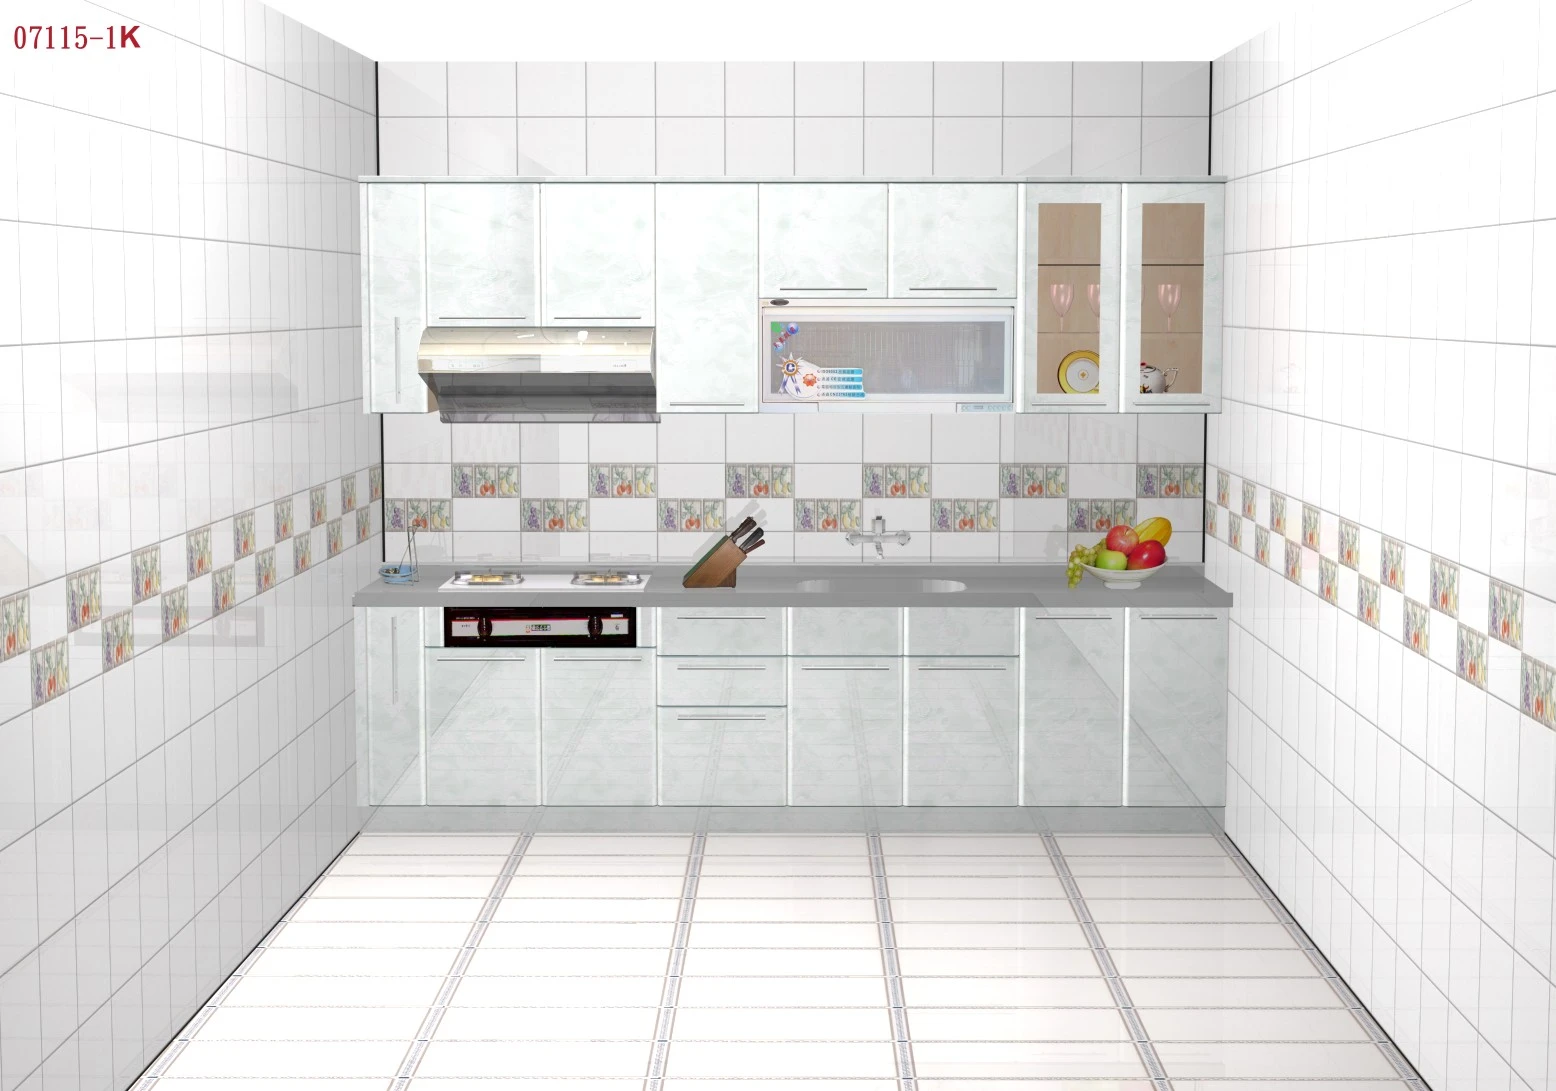 系統櫥櫃  廚具  衛浴設備  逆滲透  瓦斯爐  熱水器  電熱爐  烘碗機